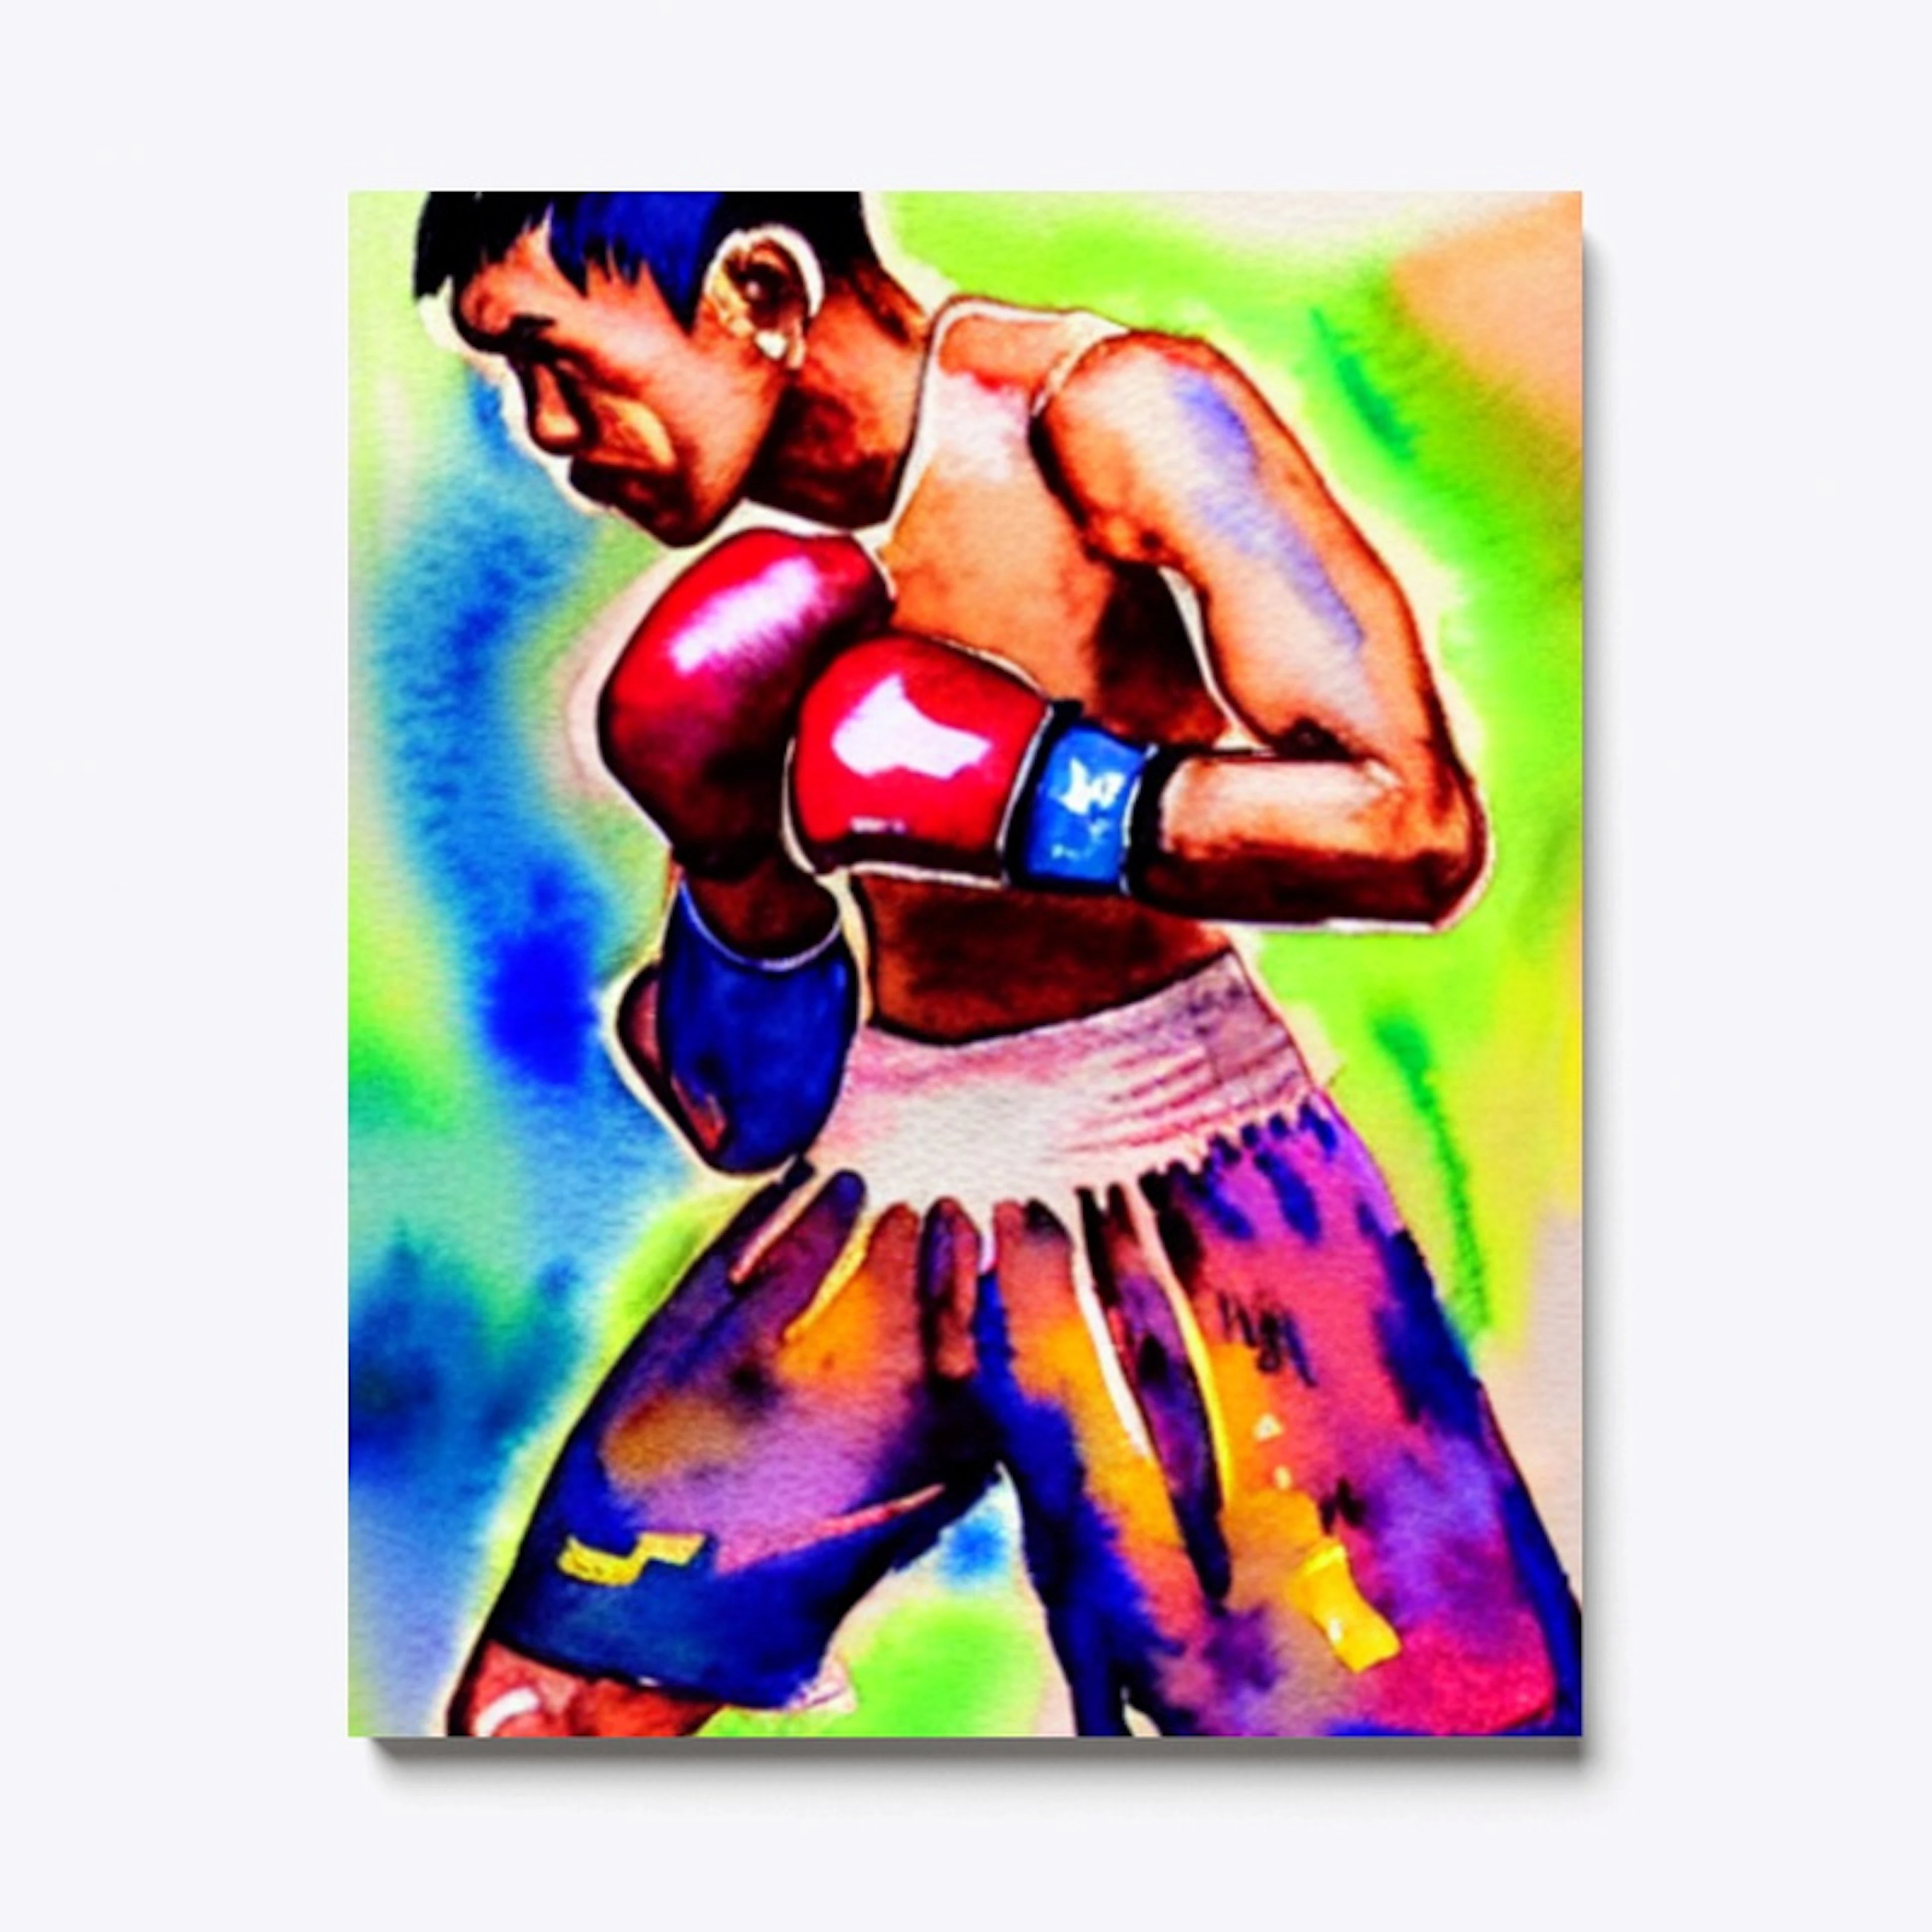 Thai boxer in bright watercolors